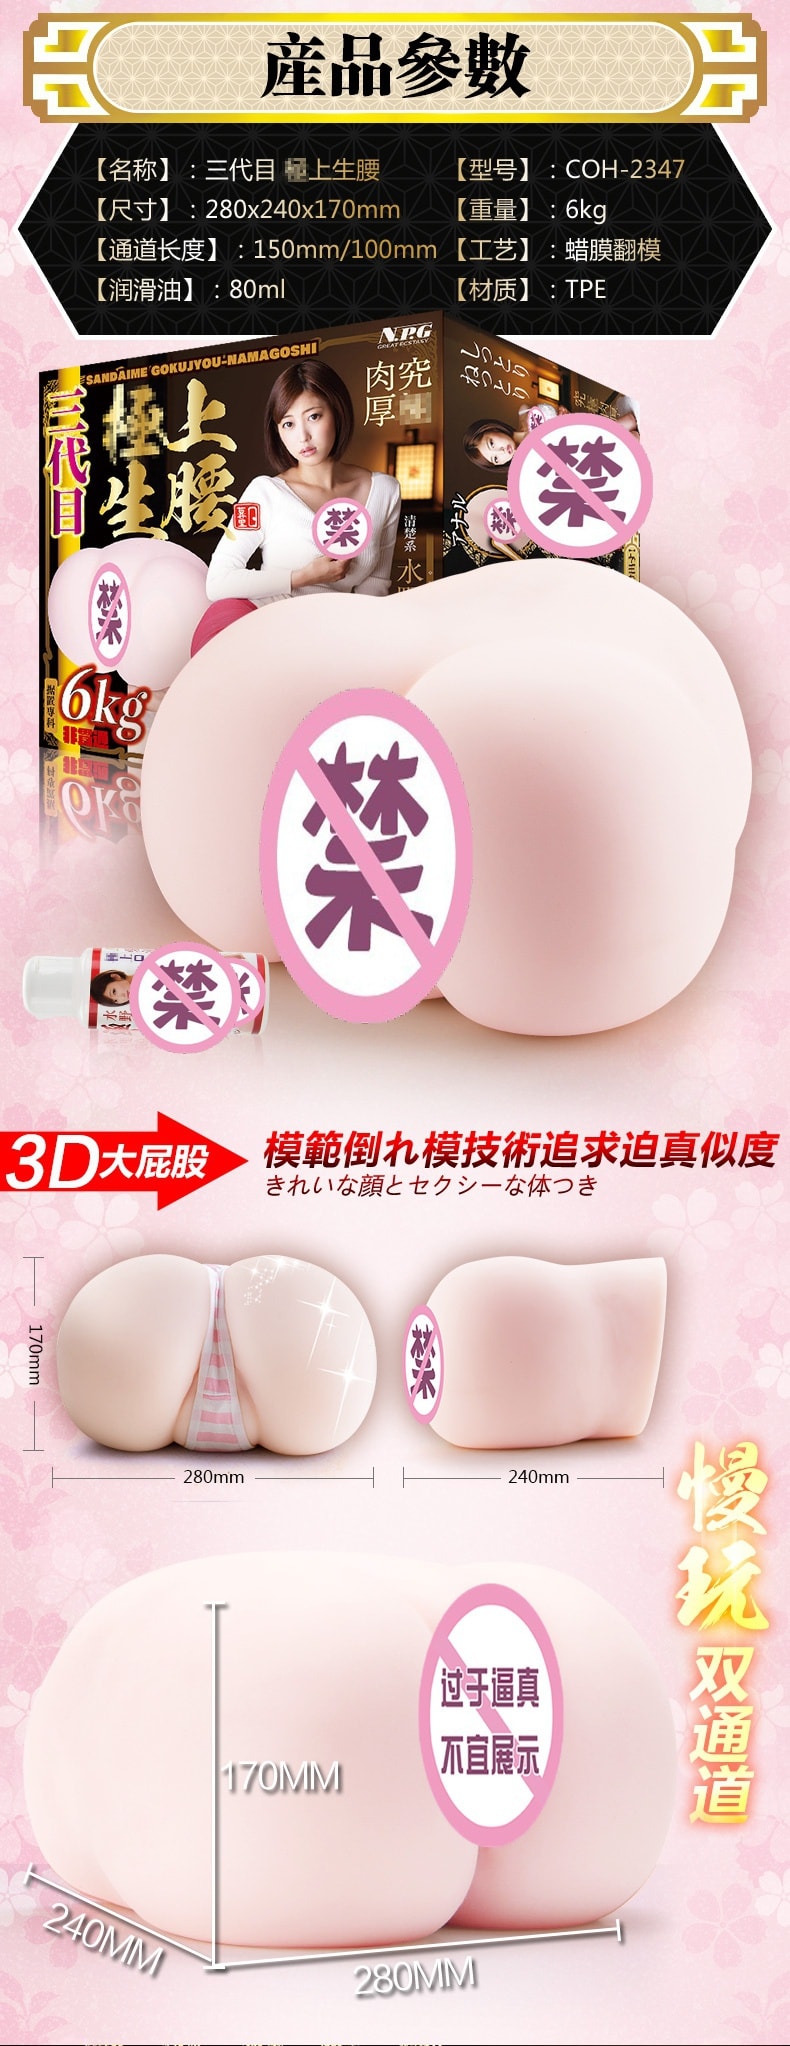 003 Asahi Mizuno Male Sex Toy